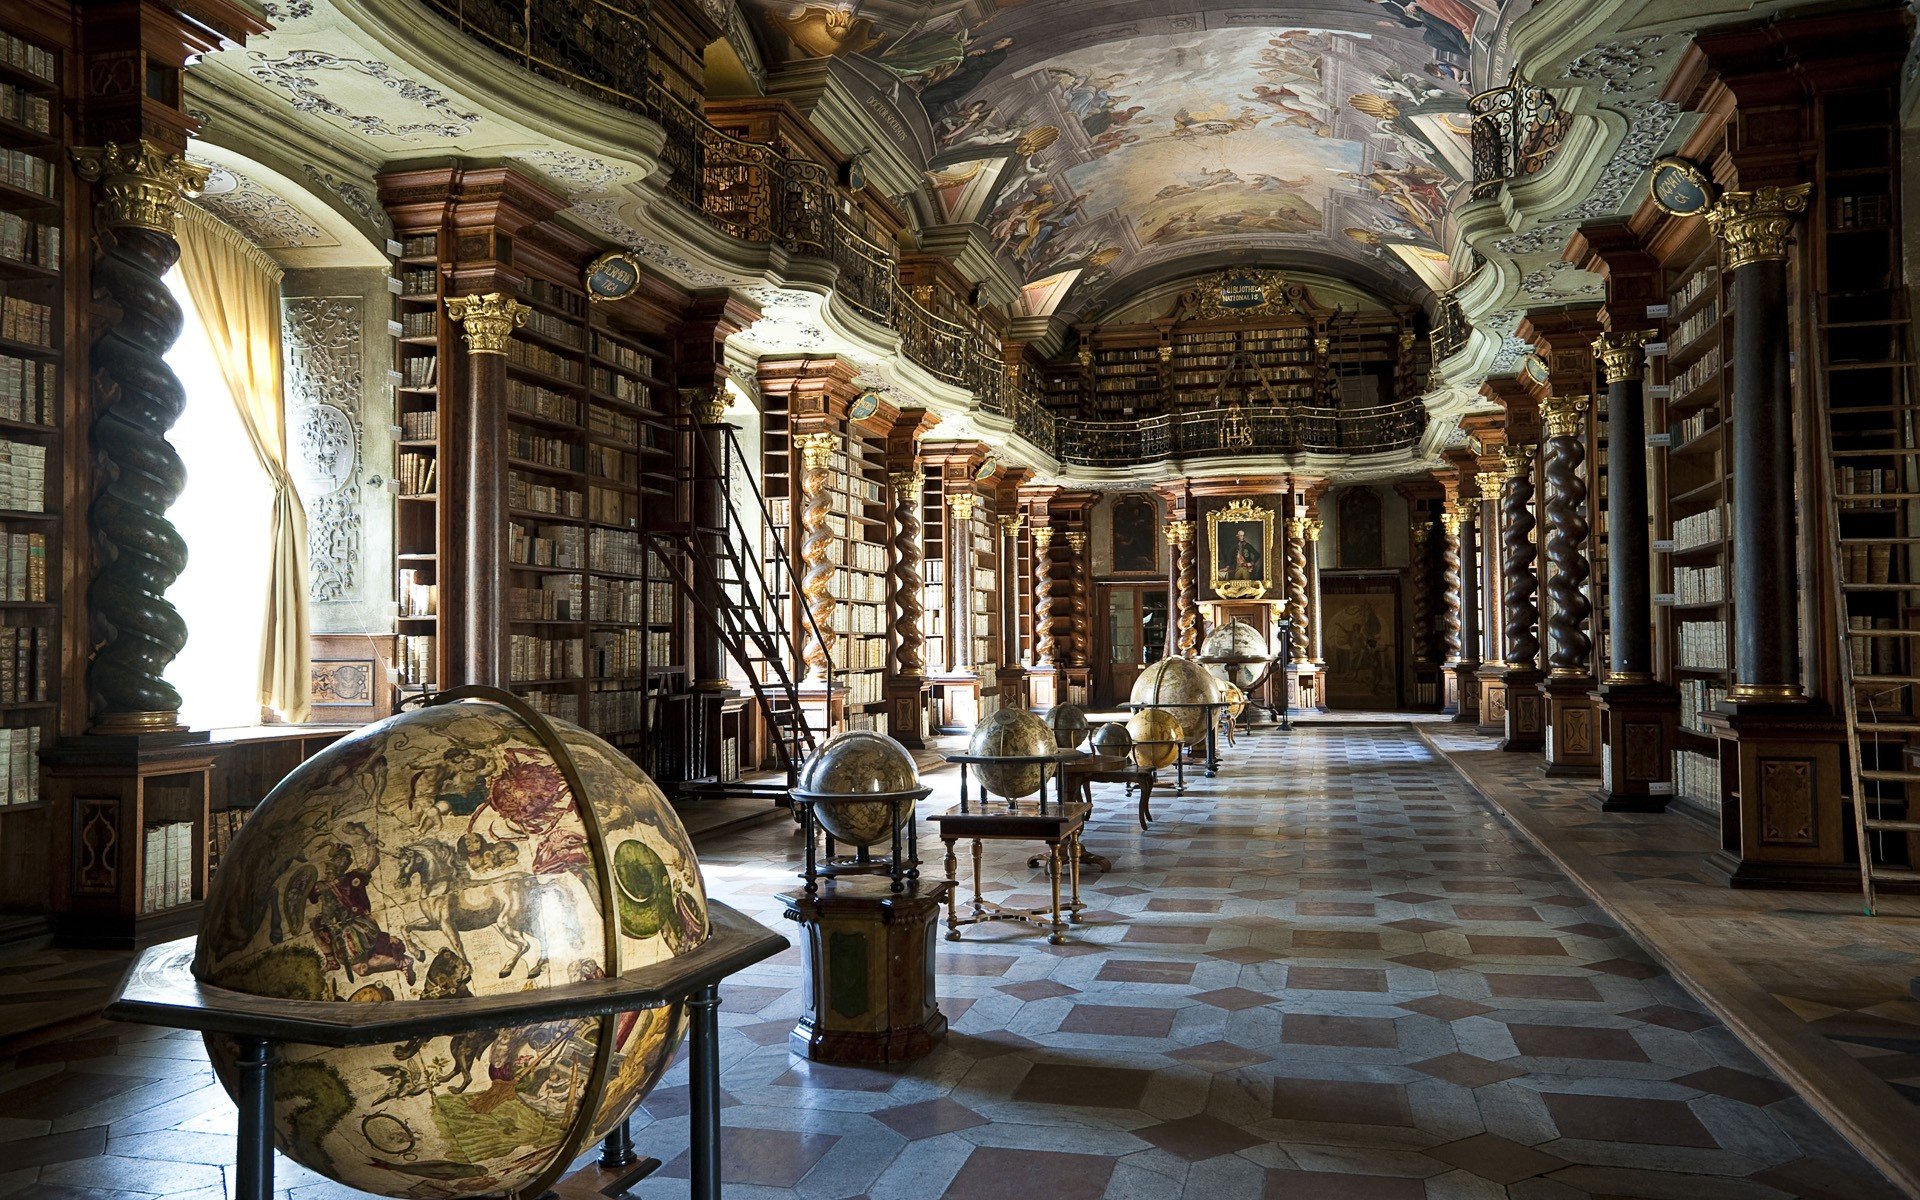 books, Library, Globes, Tiles, Shelves, Architecture, Interiors, Window, Sunlight, Pillar, Prague, Czech Republic, Klementinum Wallpaper